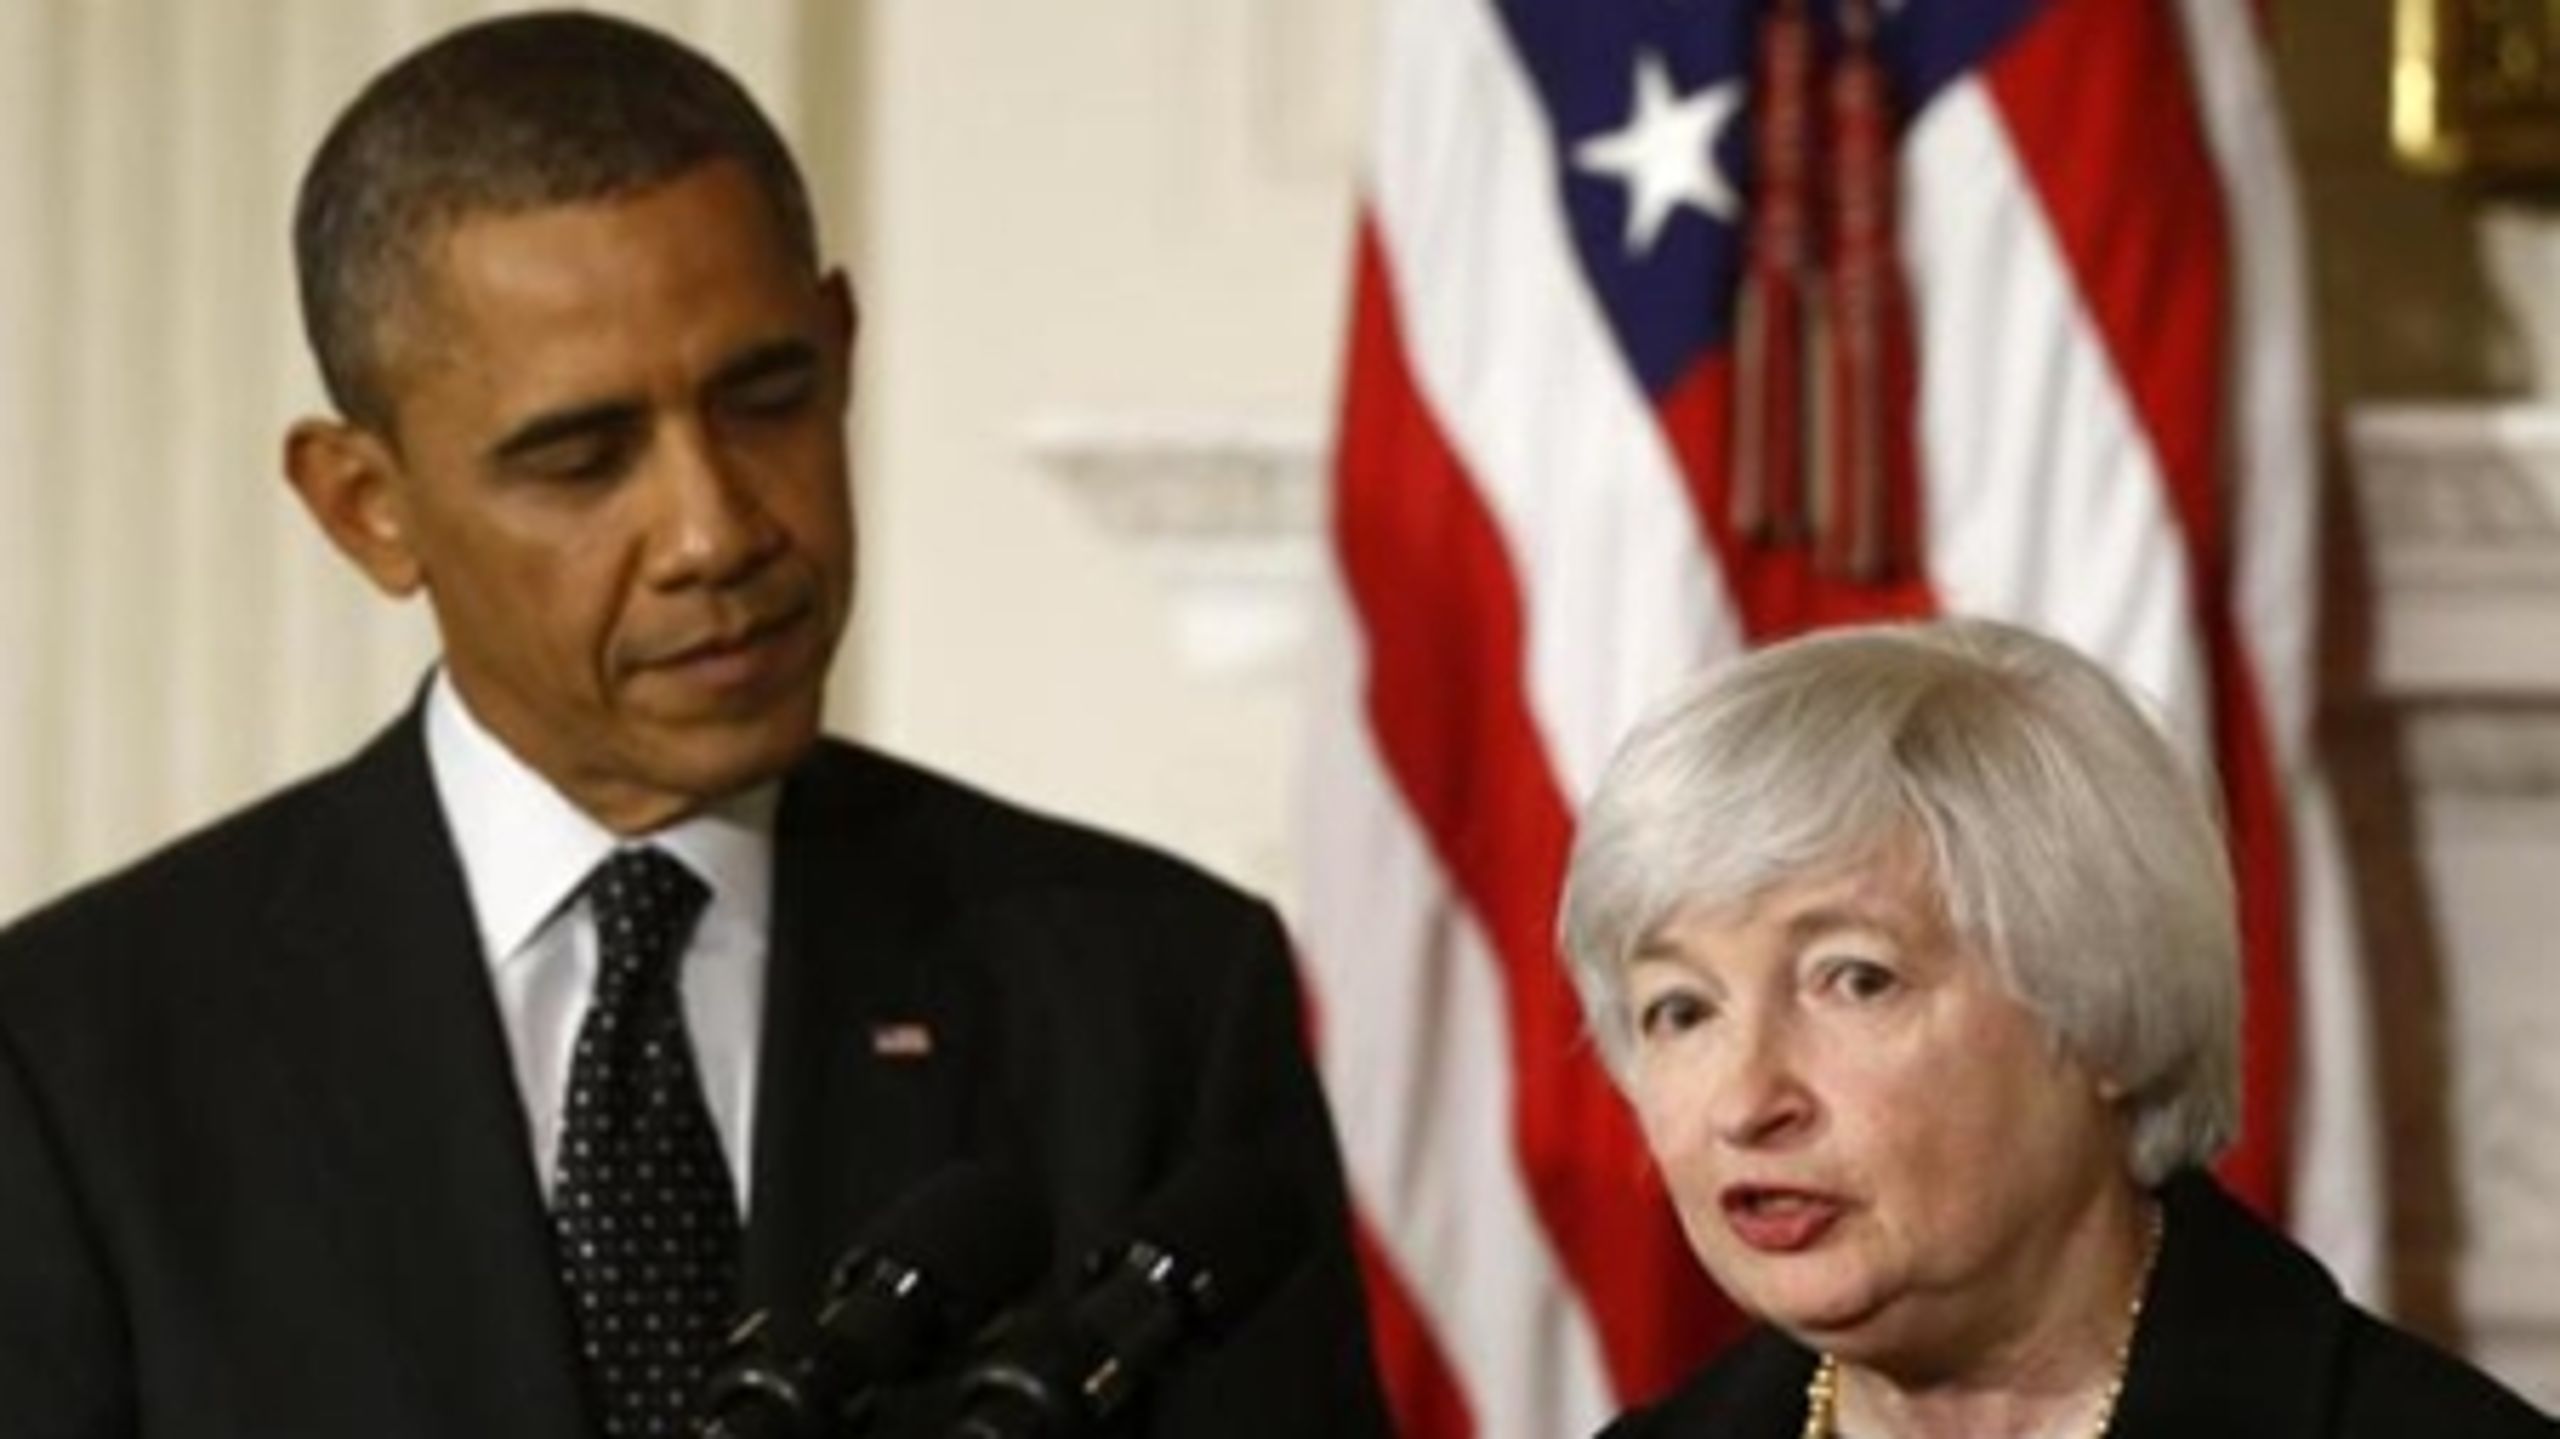 Præsidenten har udpeget Janet Yellen til at overtage som centralbankchef, når Ben Bernanke går af ved årsskiftet. Udpegningen skal nu godkendes af det demokratisk styrede Senat.